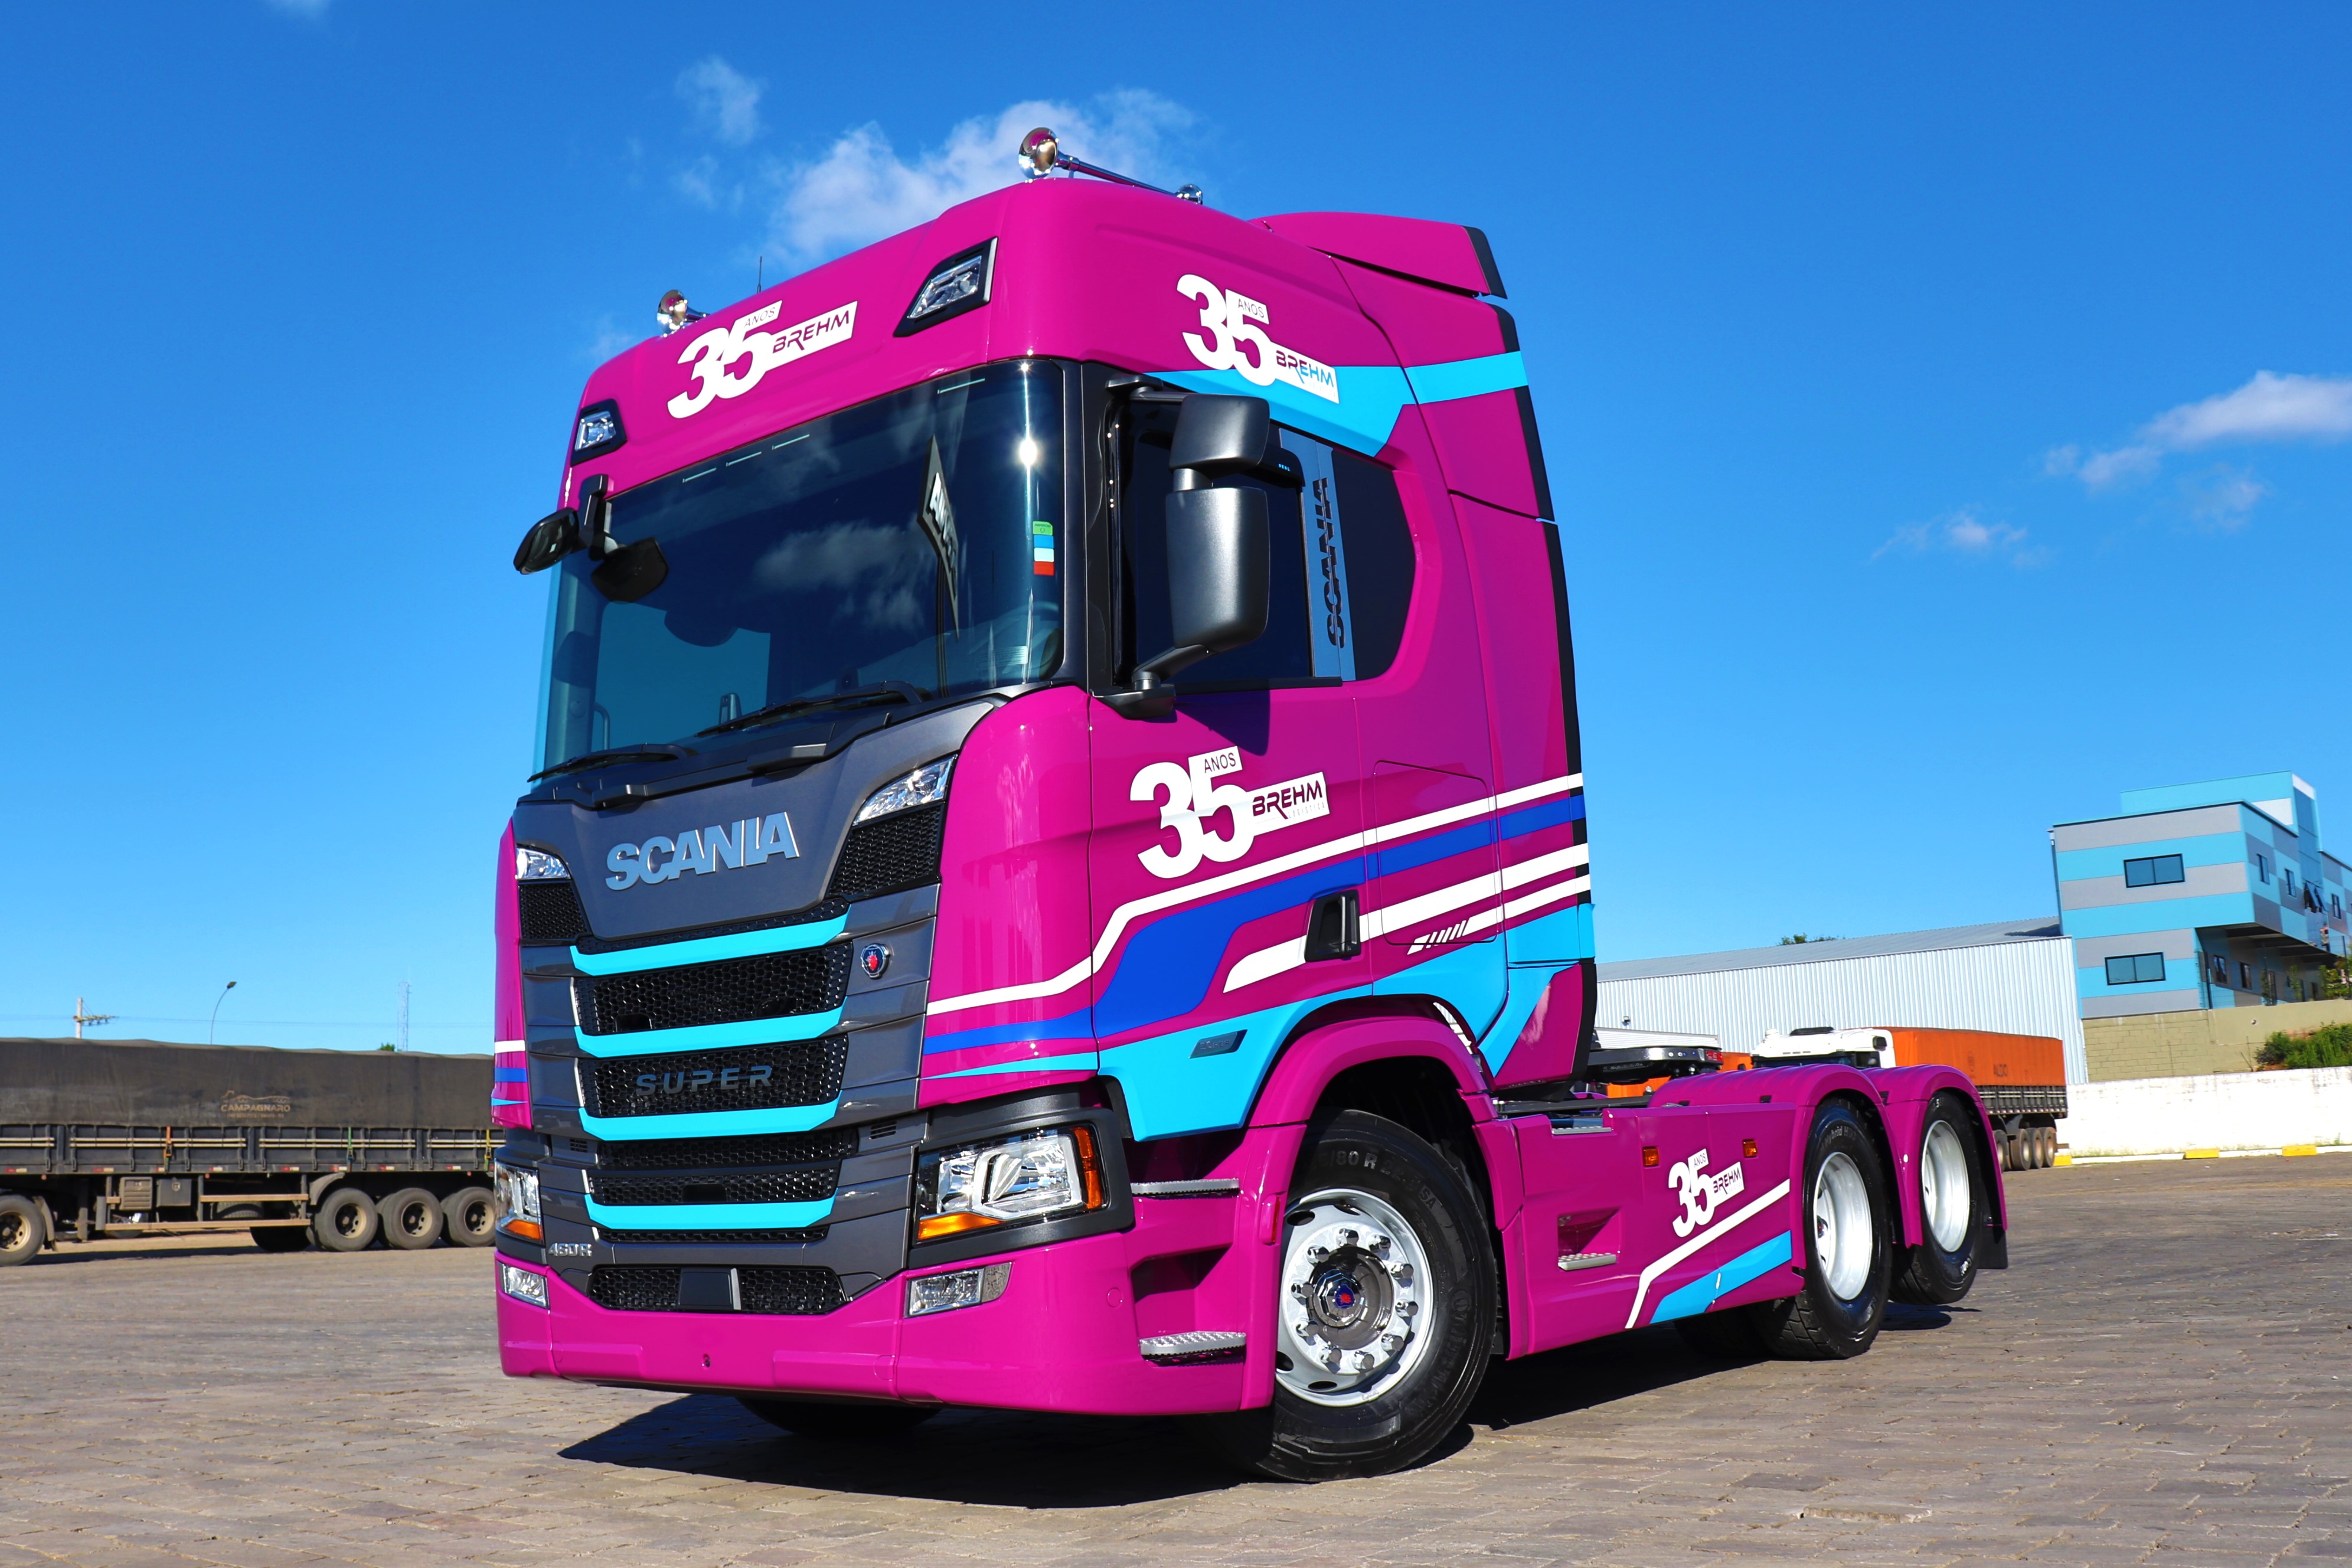 Brehm Comércio e Transporte celebra 35 anos de fundação com caminhão comemorativo Scania.